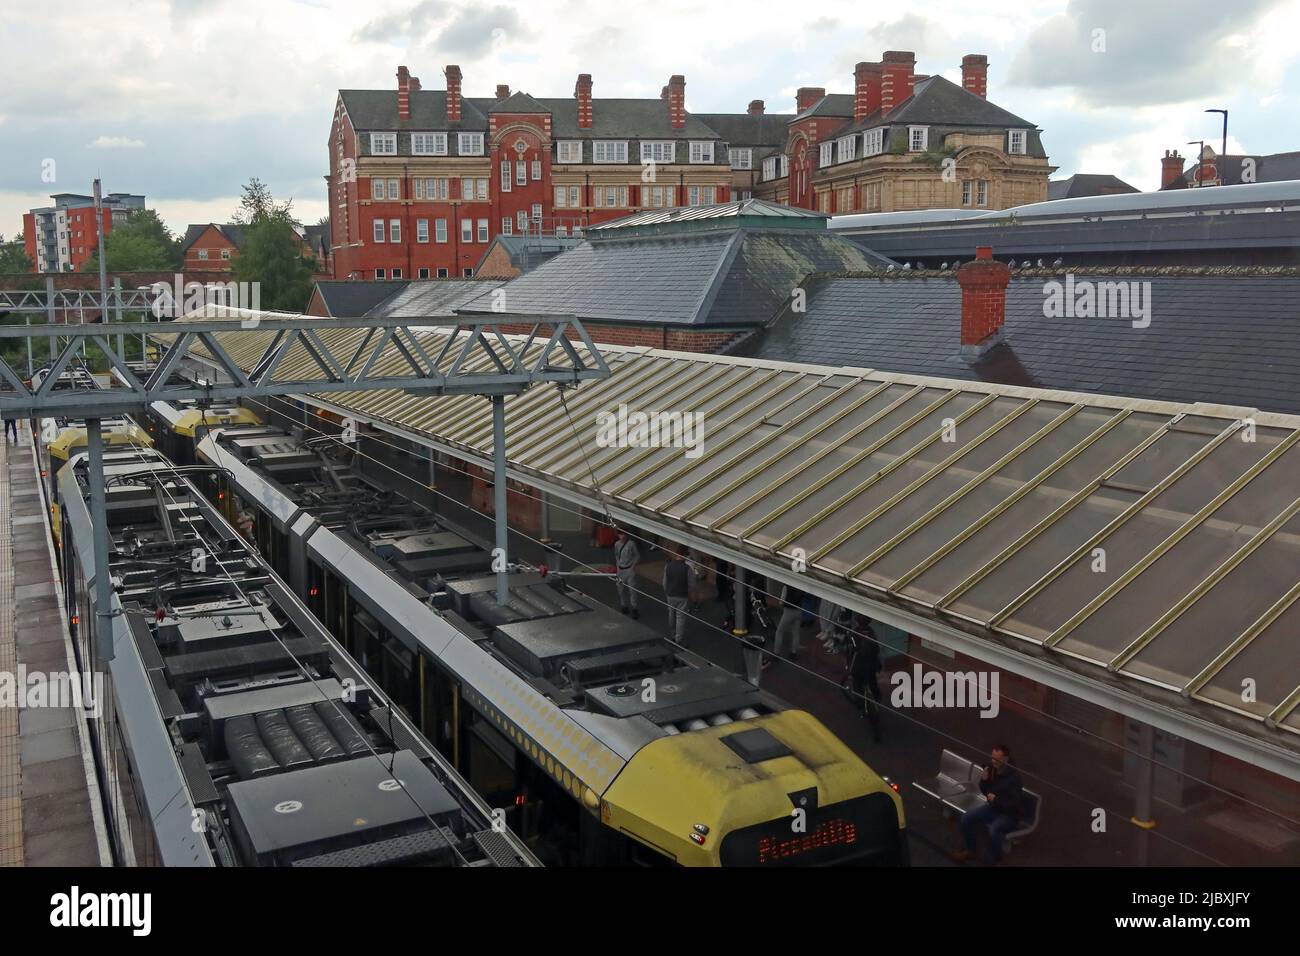 Deux trams Metrolink à l'échangeur / gare de transport en commun d'Altrincham, Stamford New Road, Greater Manchester, Angleterre, Royaume-Uni, WA14 1BL Banque D'Images